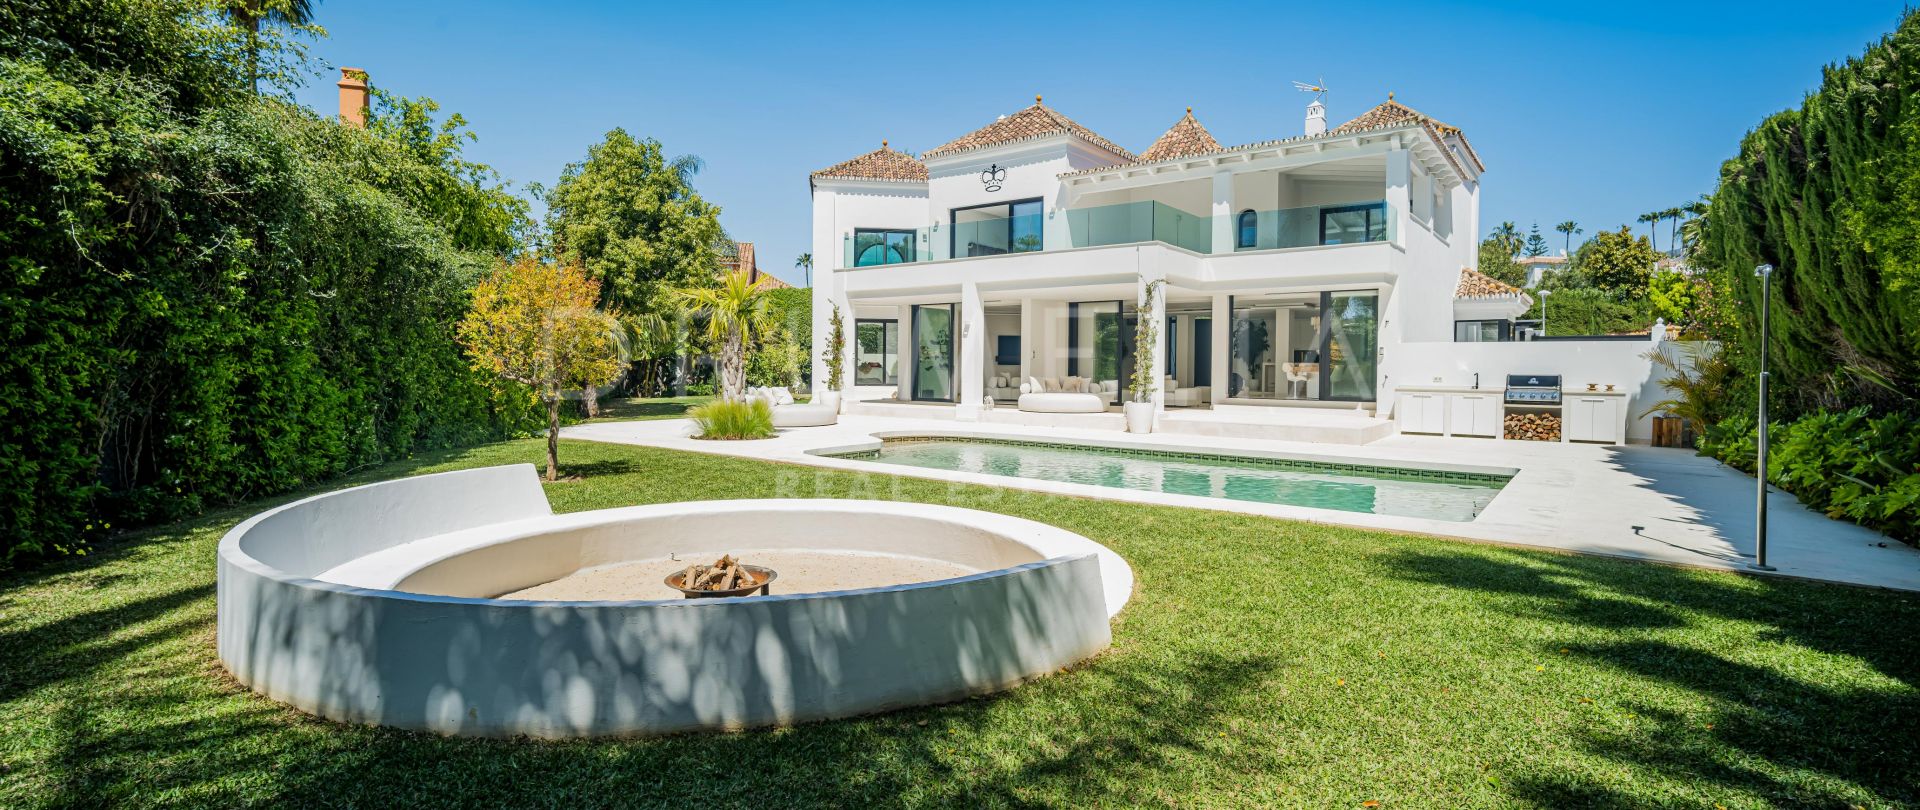 Preciosa villa de lujo moderna reformada en Parcelas del Golf, Nueva Andalucia, Marbella